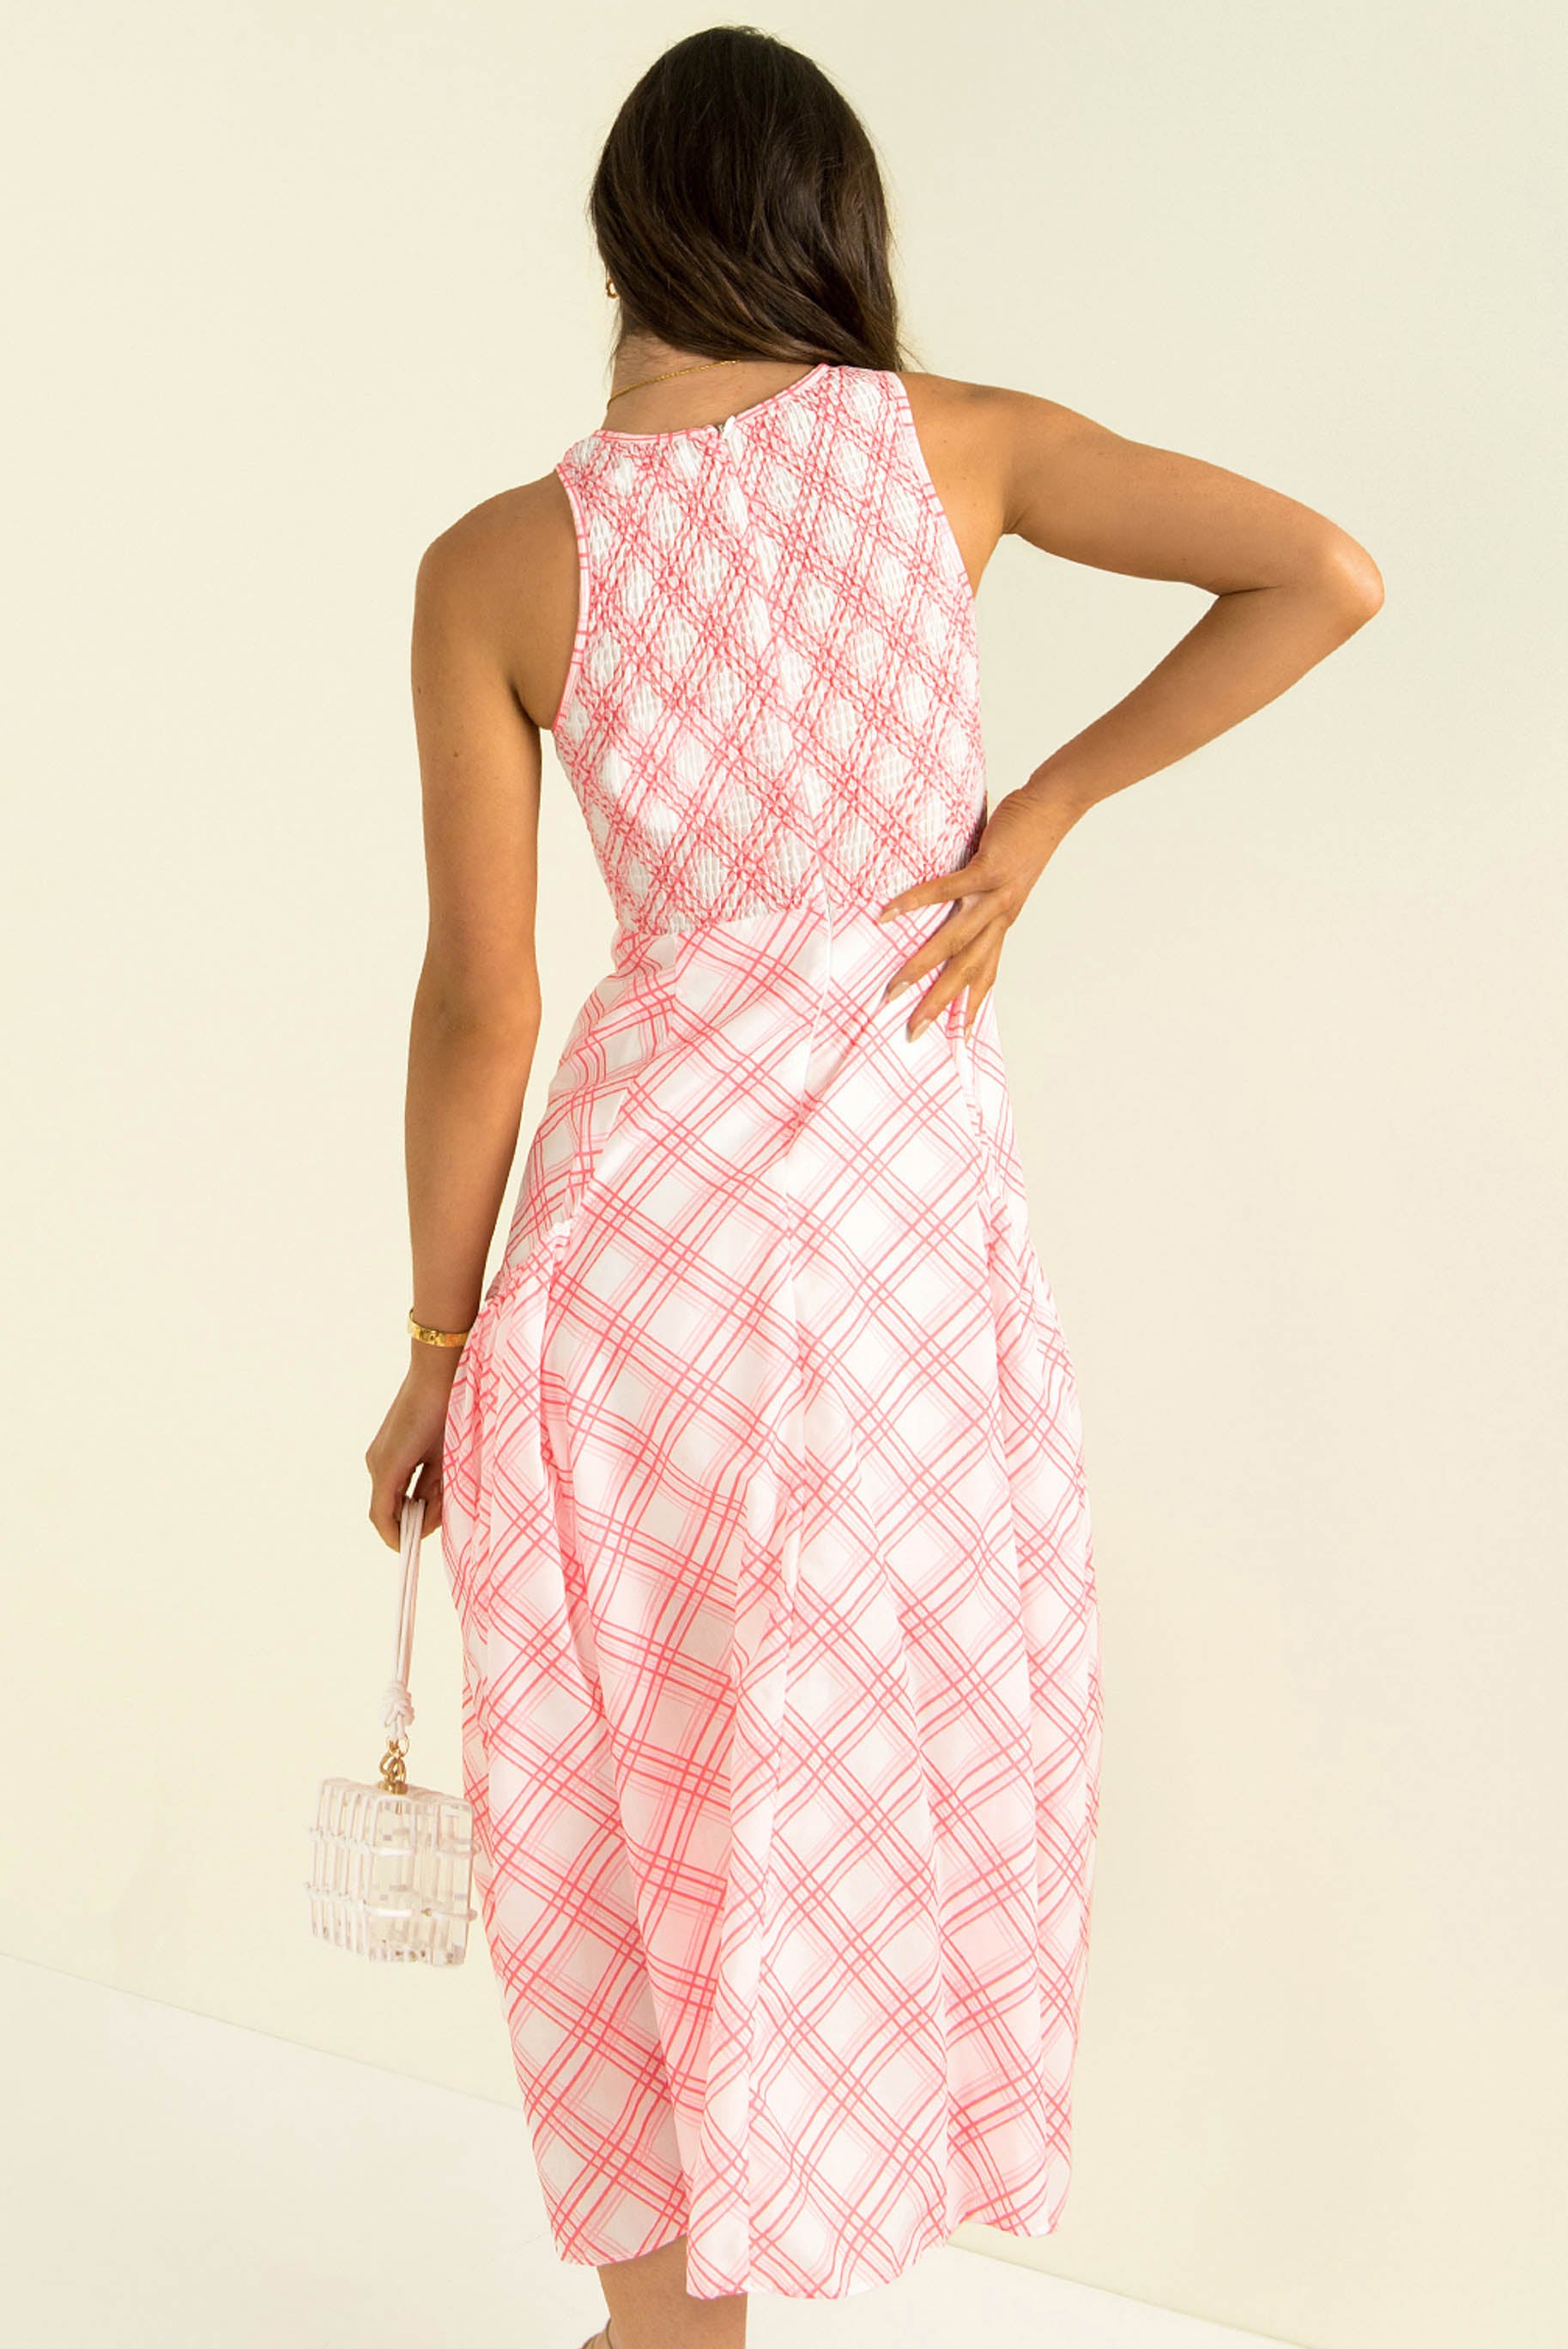 Hartley Dress / Pink